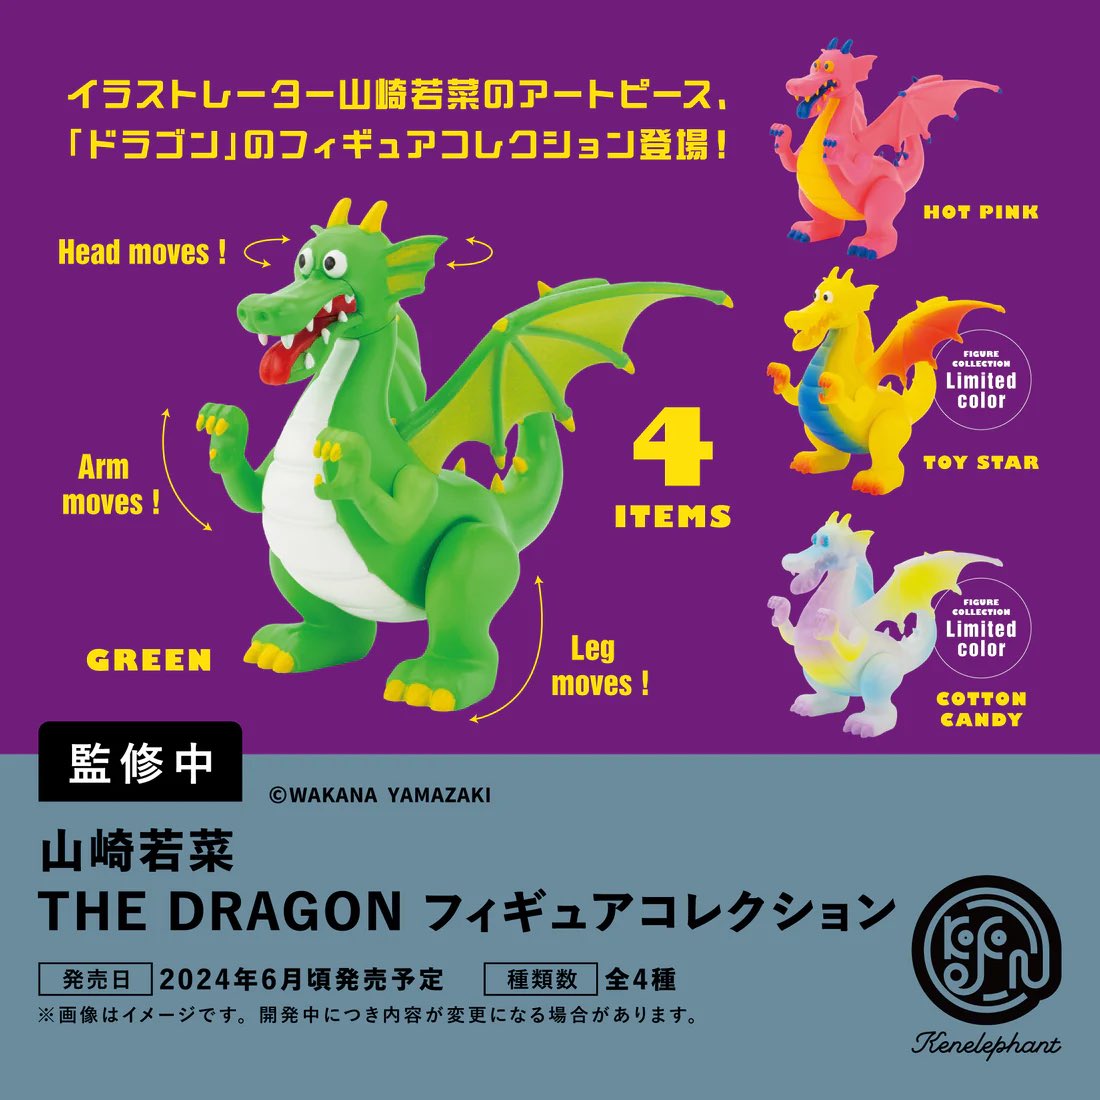 【6月予約】【送料無料】山崎若菜 THE DRAGON フィギュアコレクション カプセル版 全6種 コンプリート